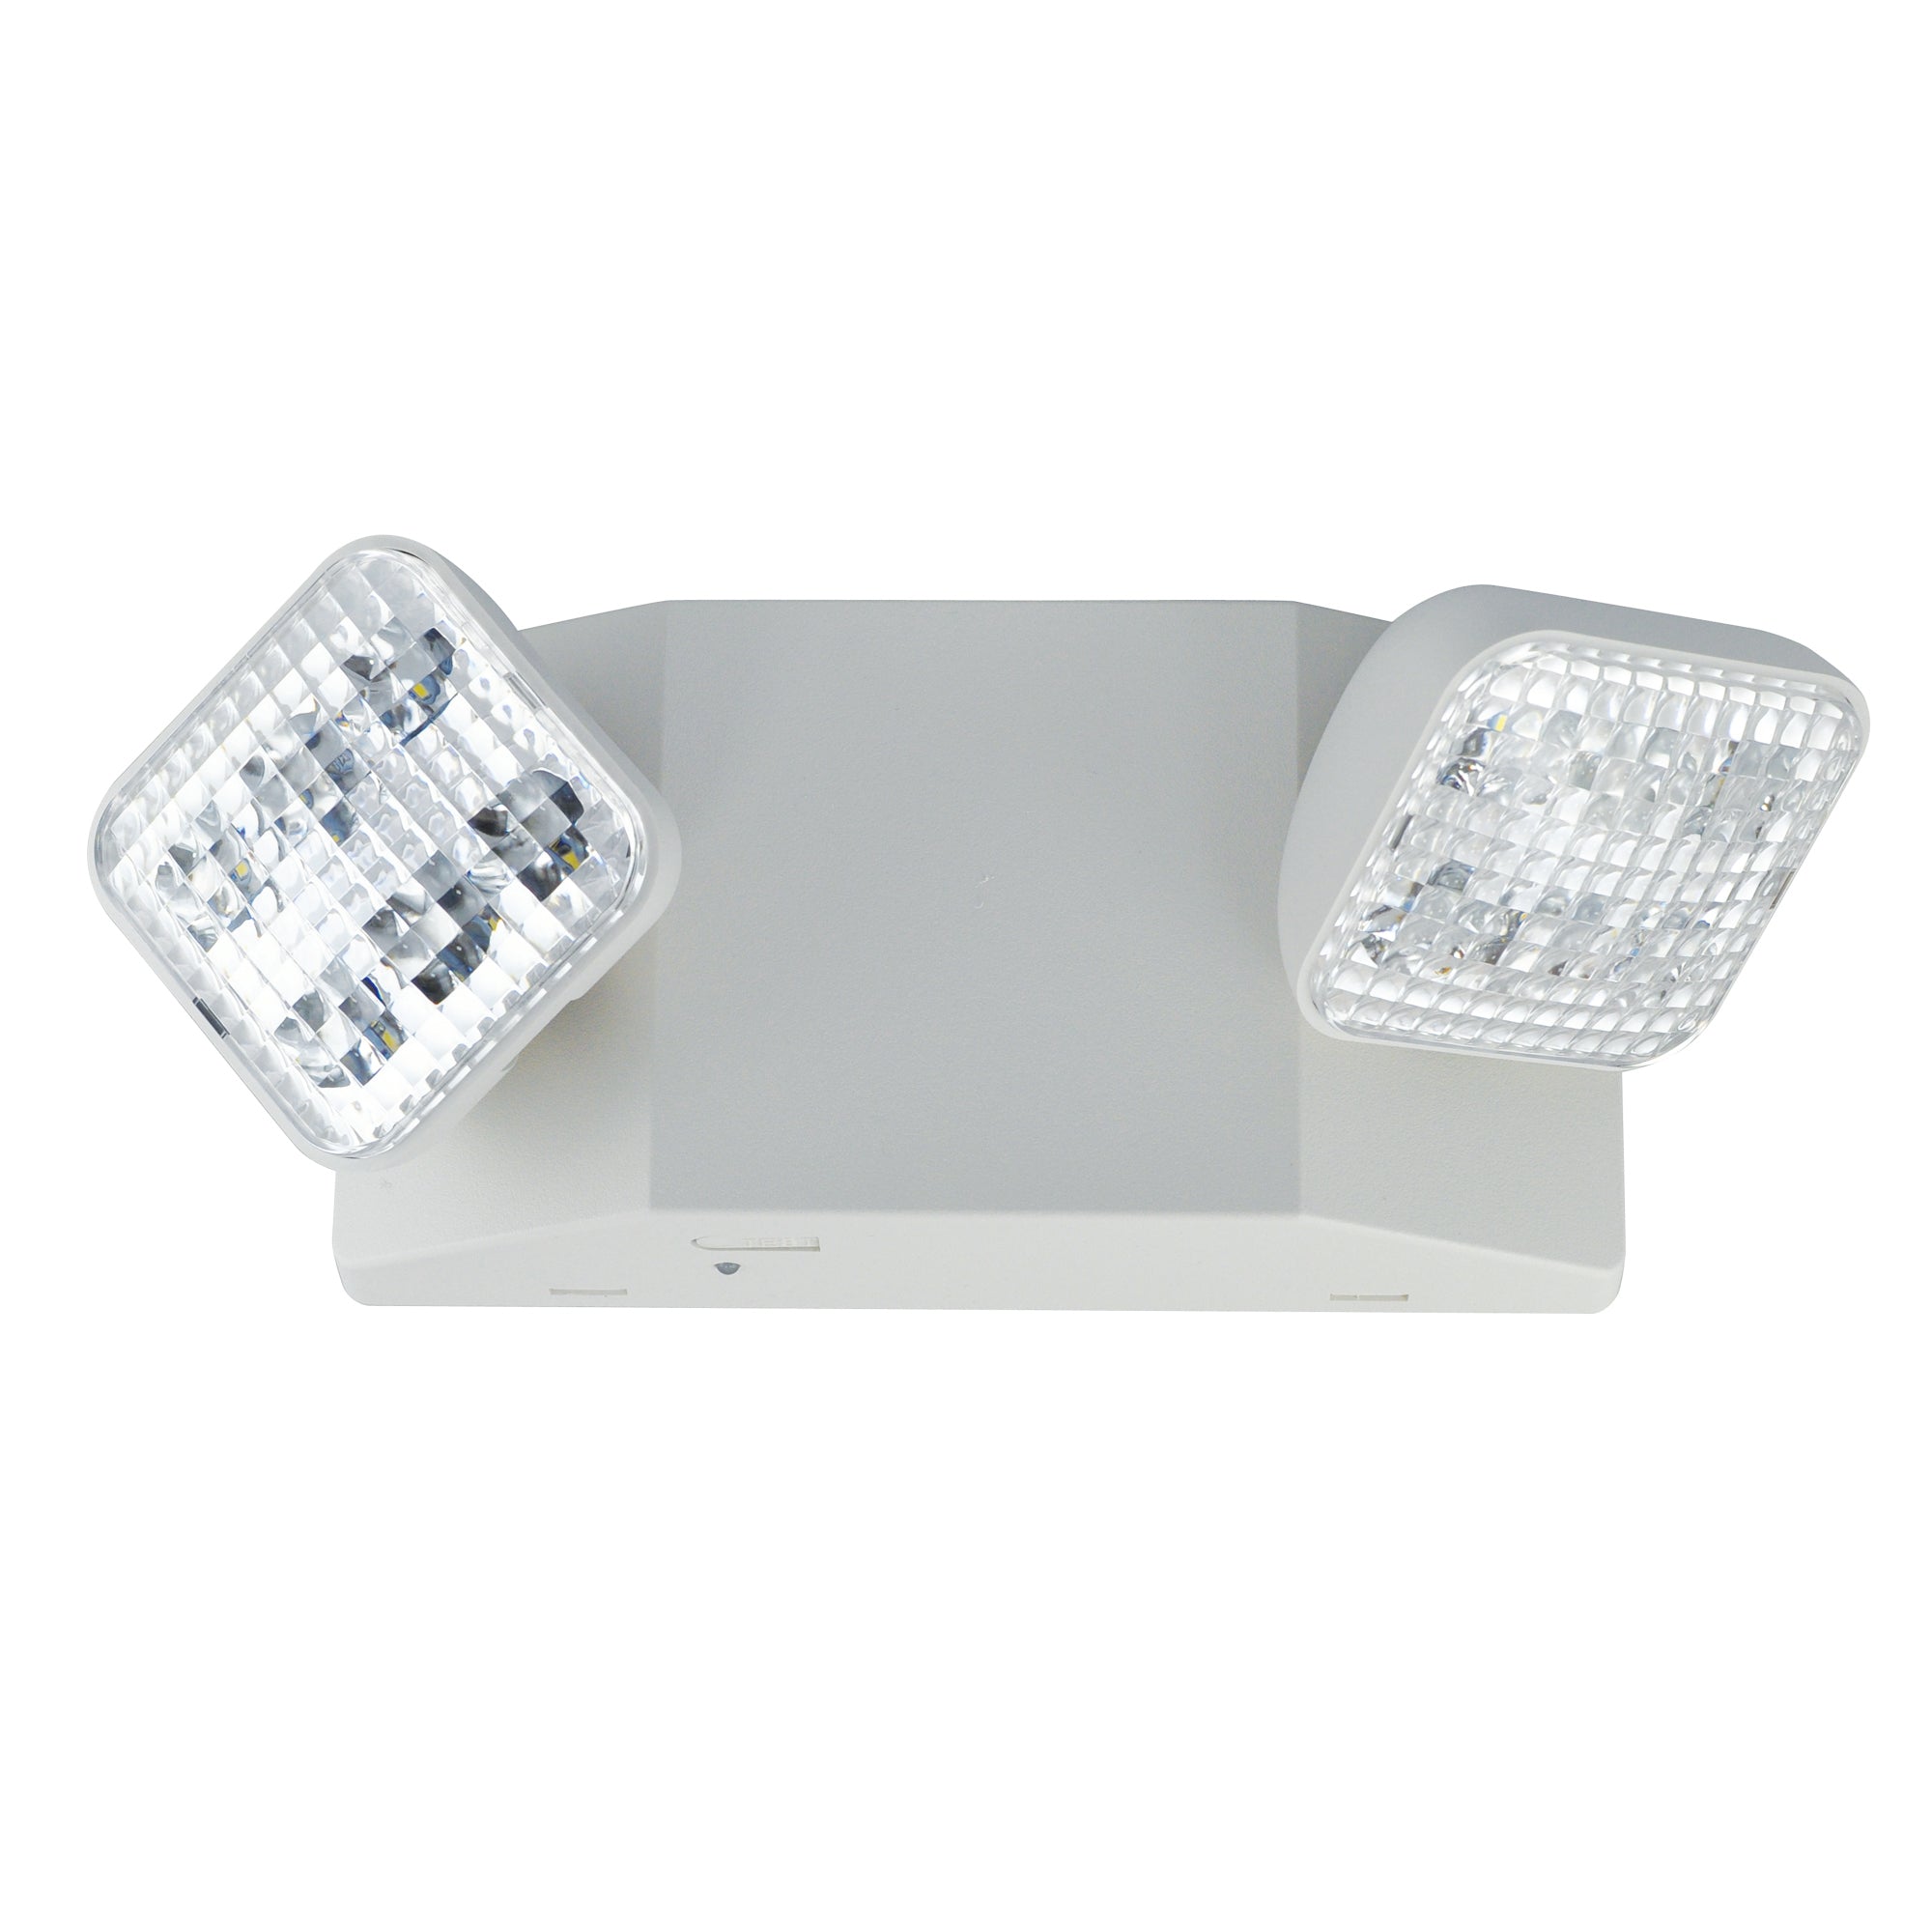 Nora Lighting NE-700LEDRCW Emergency LED Light With Remote Capability - White